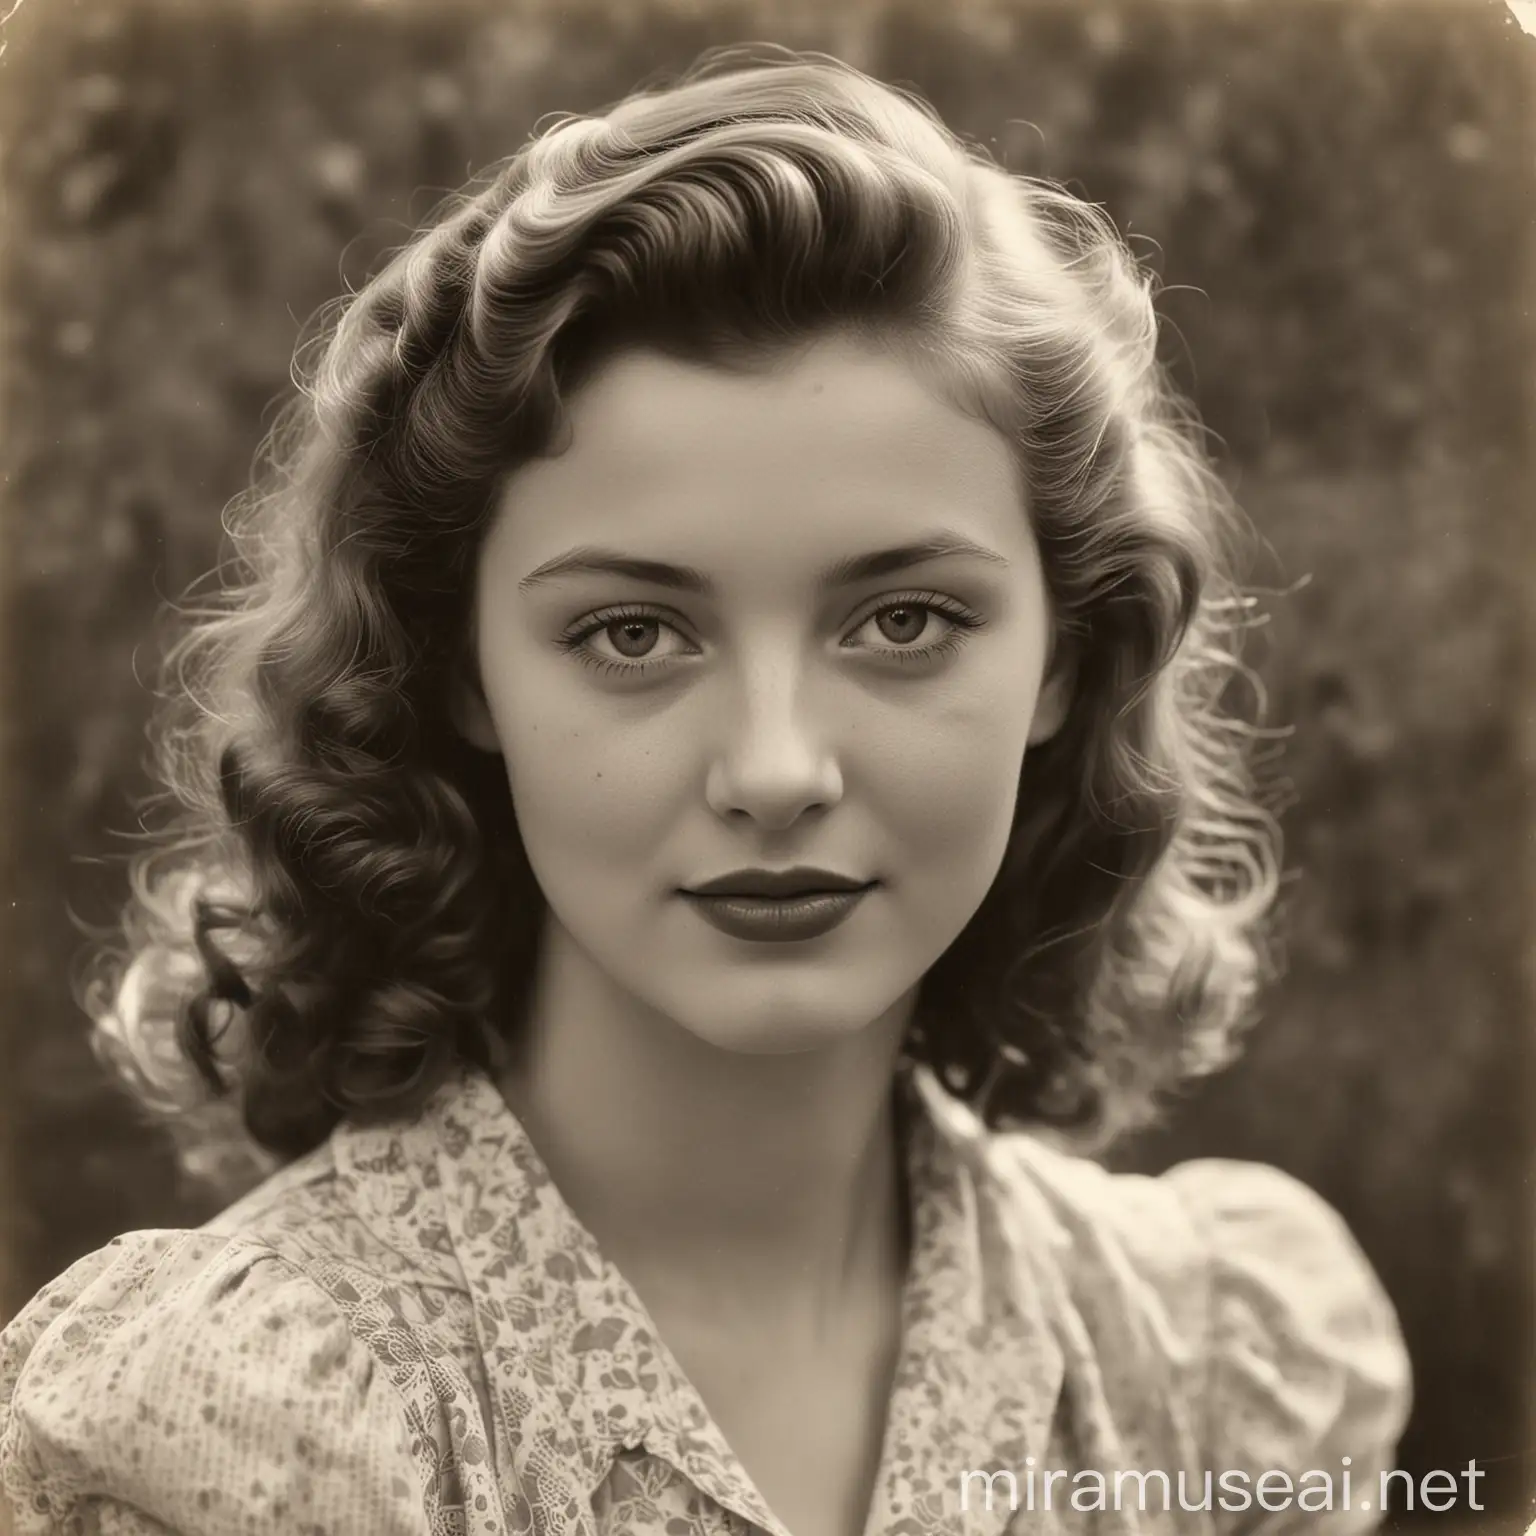 Elegant 1940s Vintage Portrait of a Graceful Young Woman